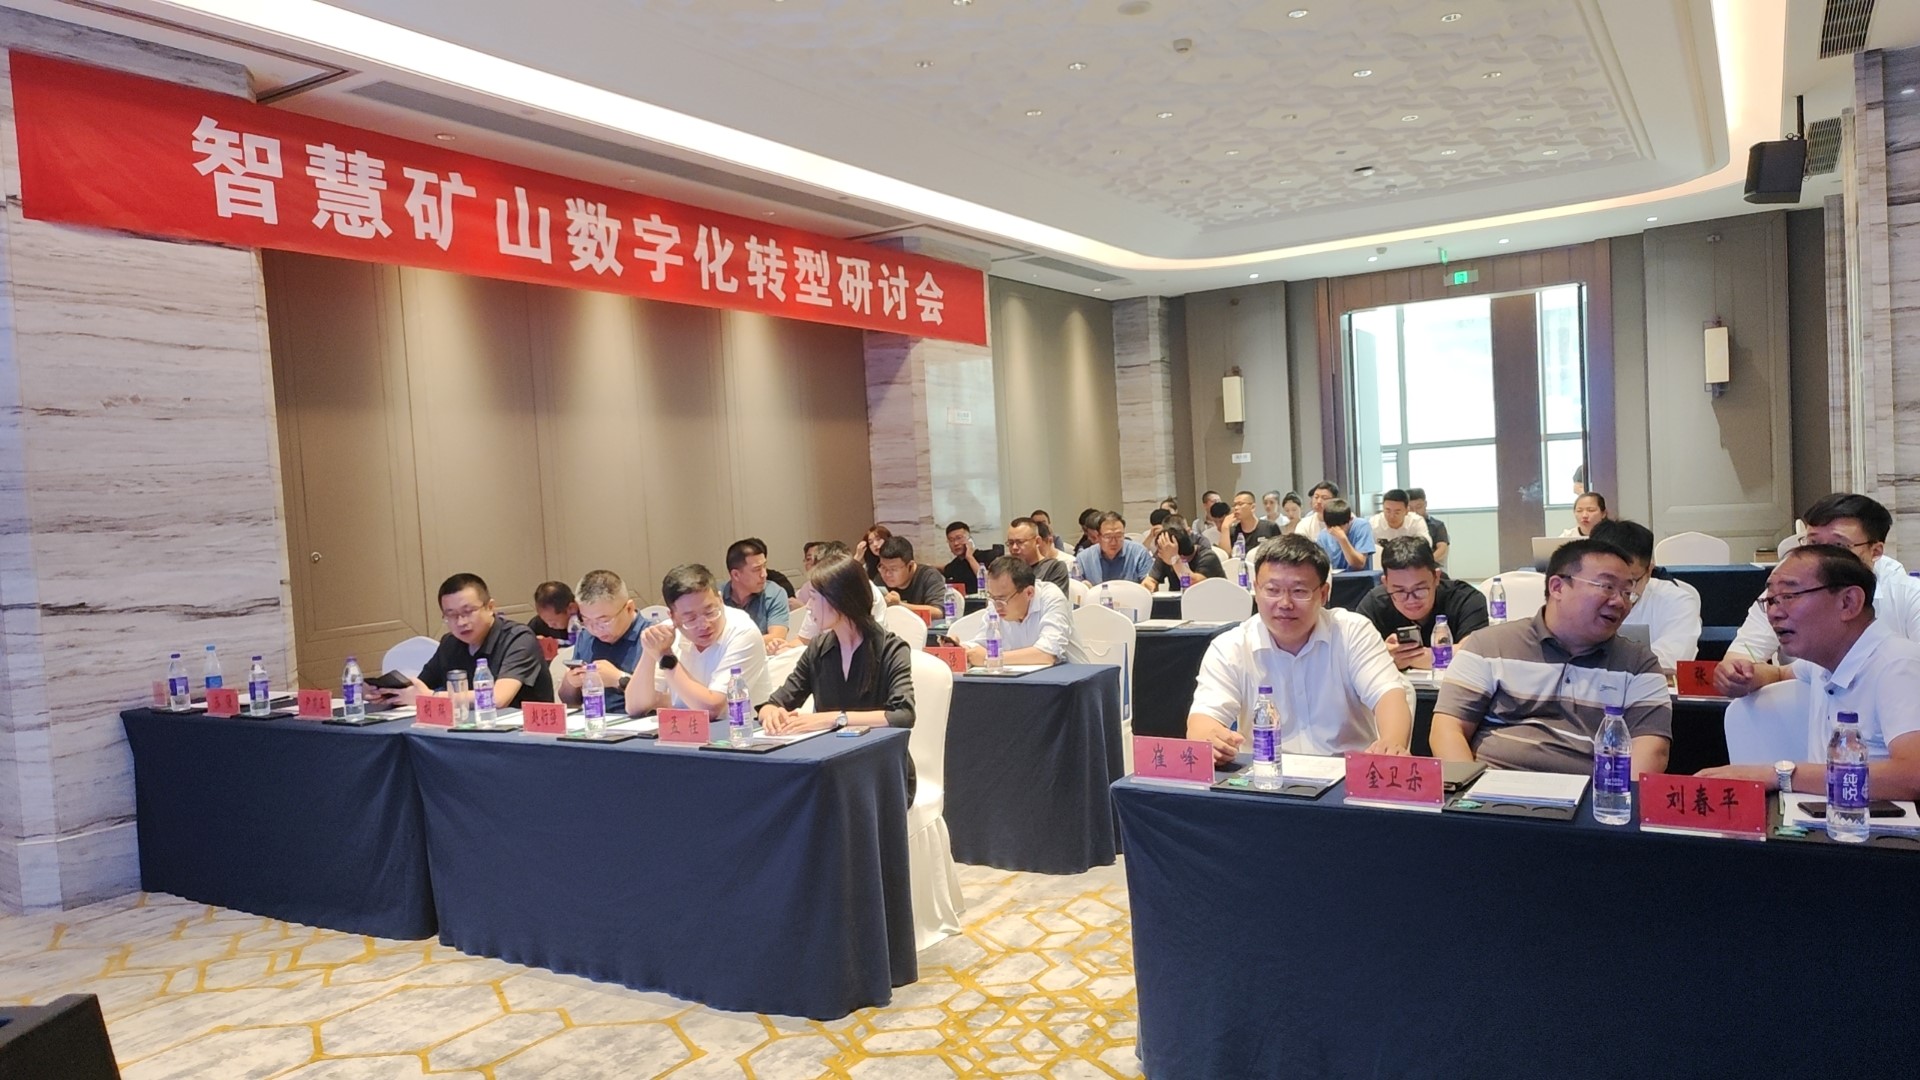 重庆林木森科技工业有限公司与浪潮集团在太原联合举办了智慧矿山数字化转型研讨会